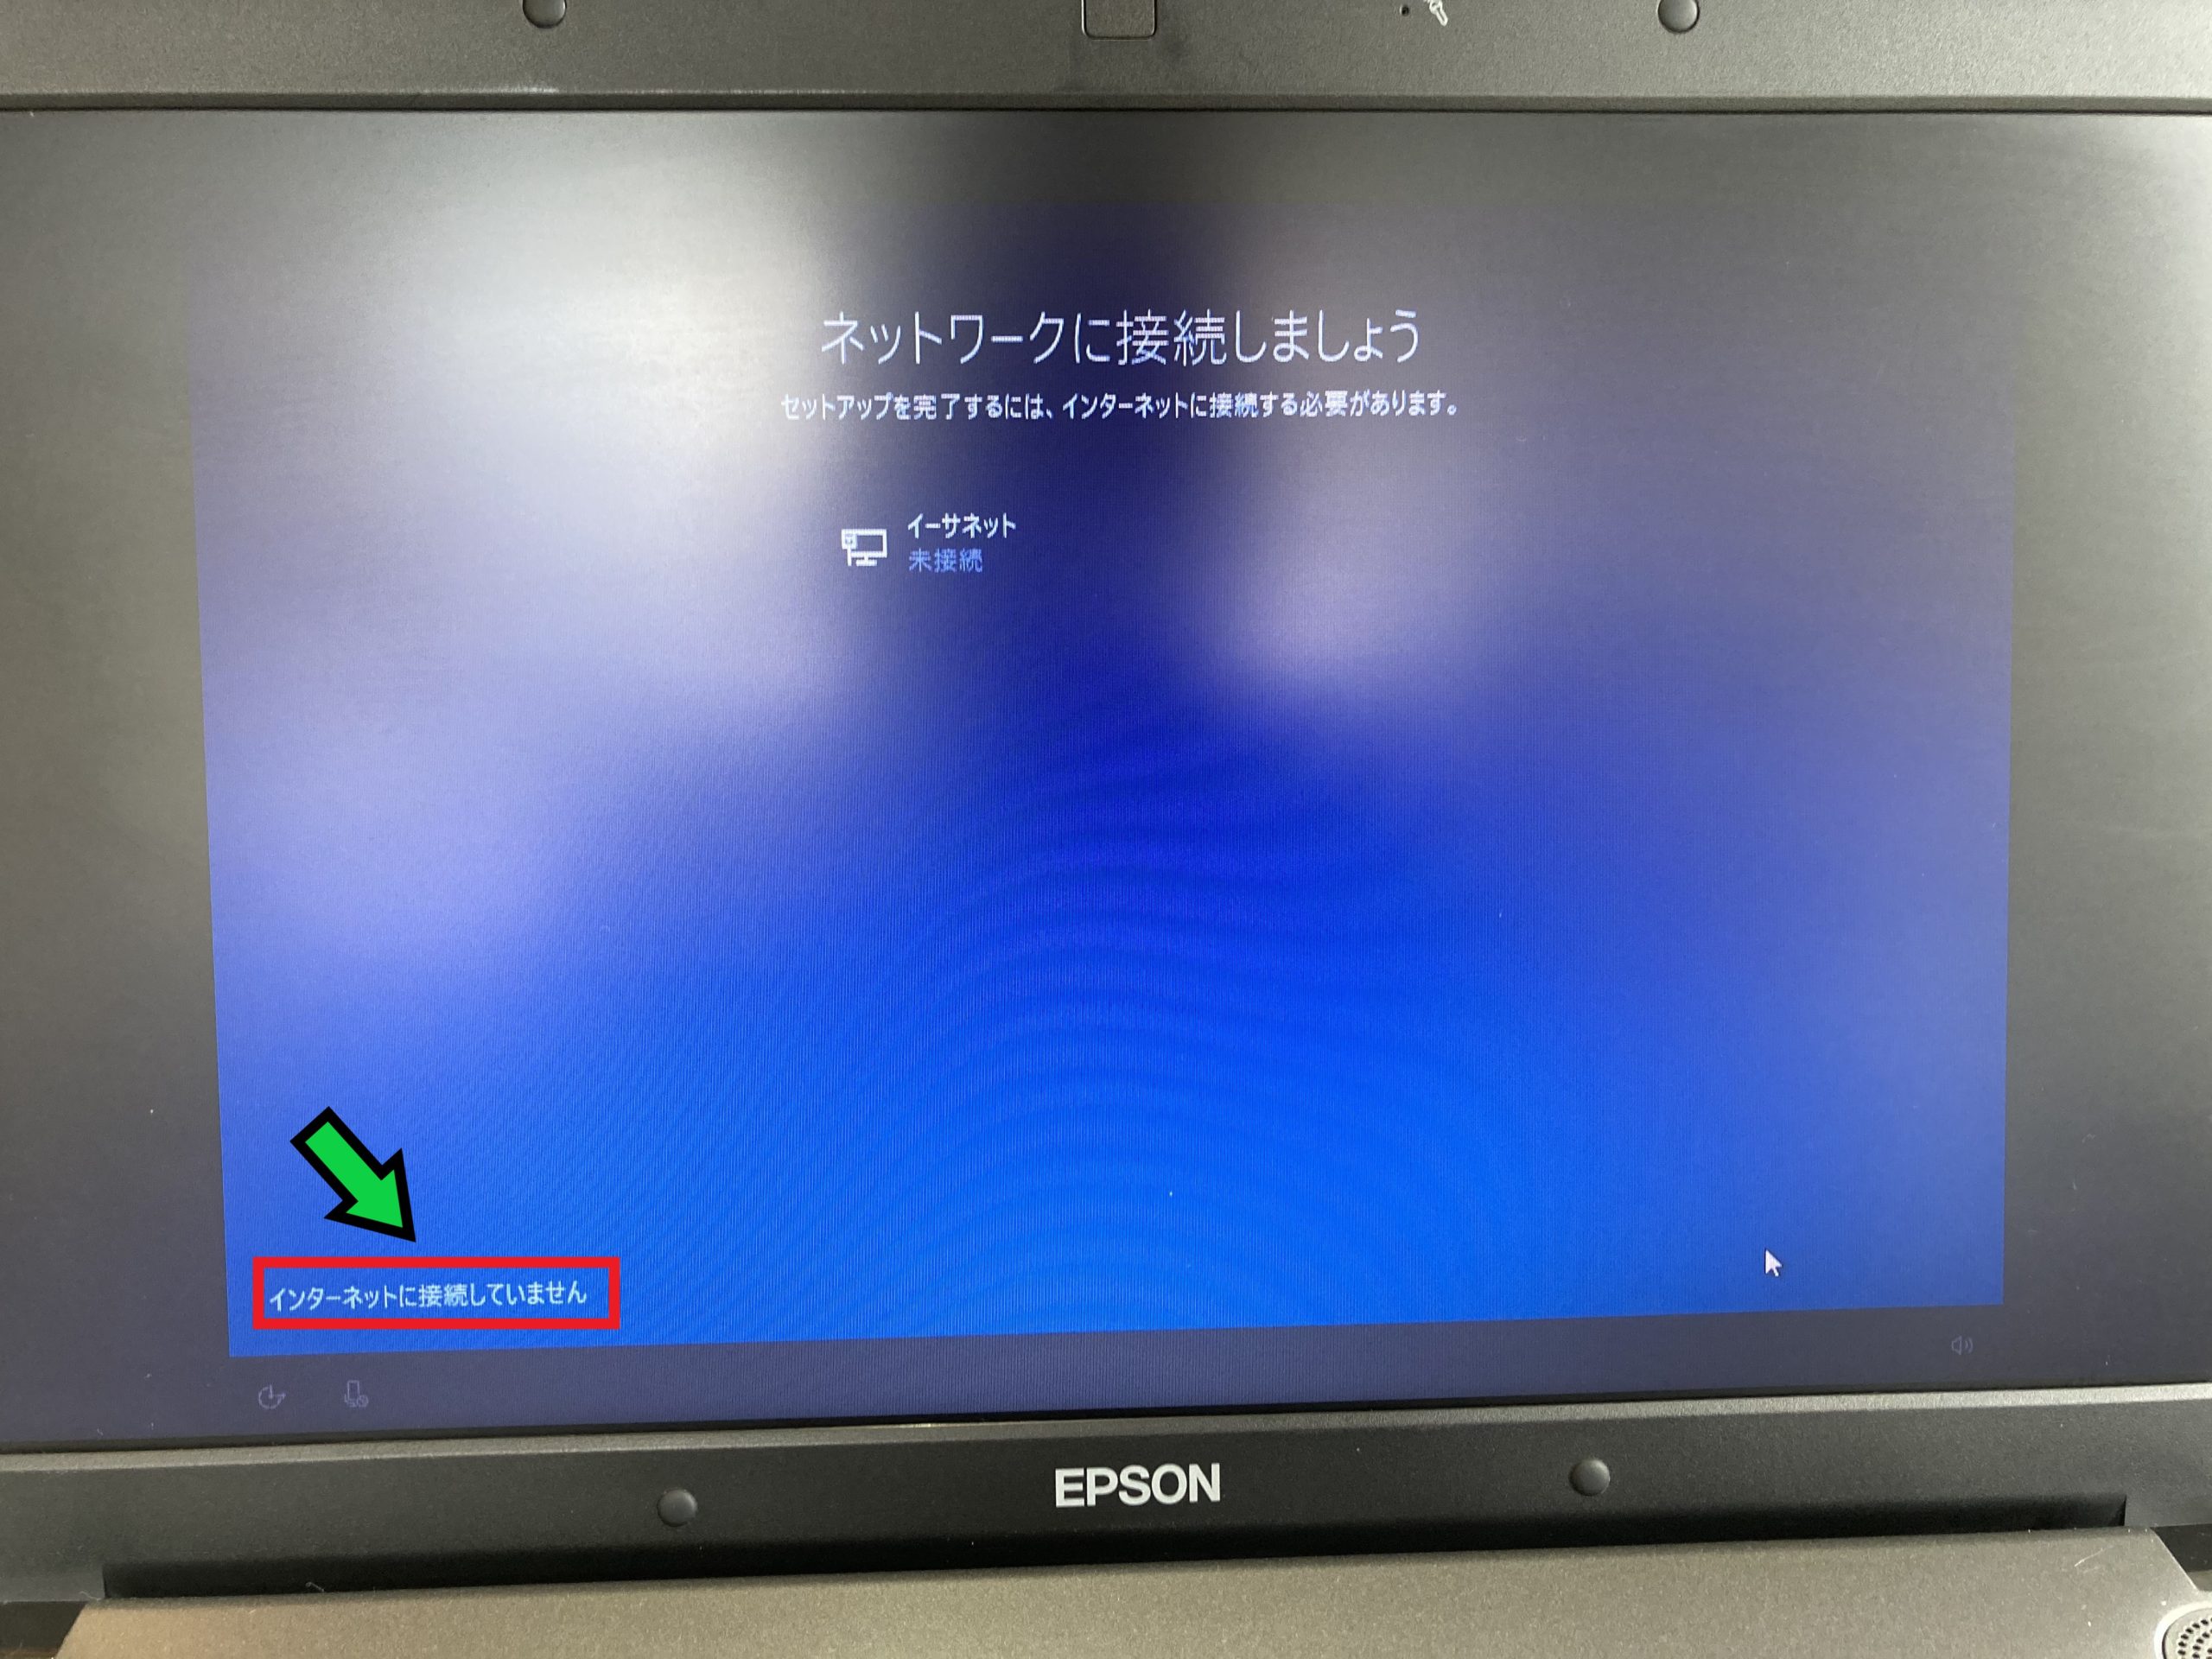 【プロが解説】失敗しないWindows10の初期セットアップ方法